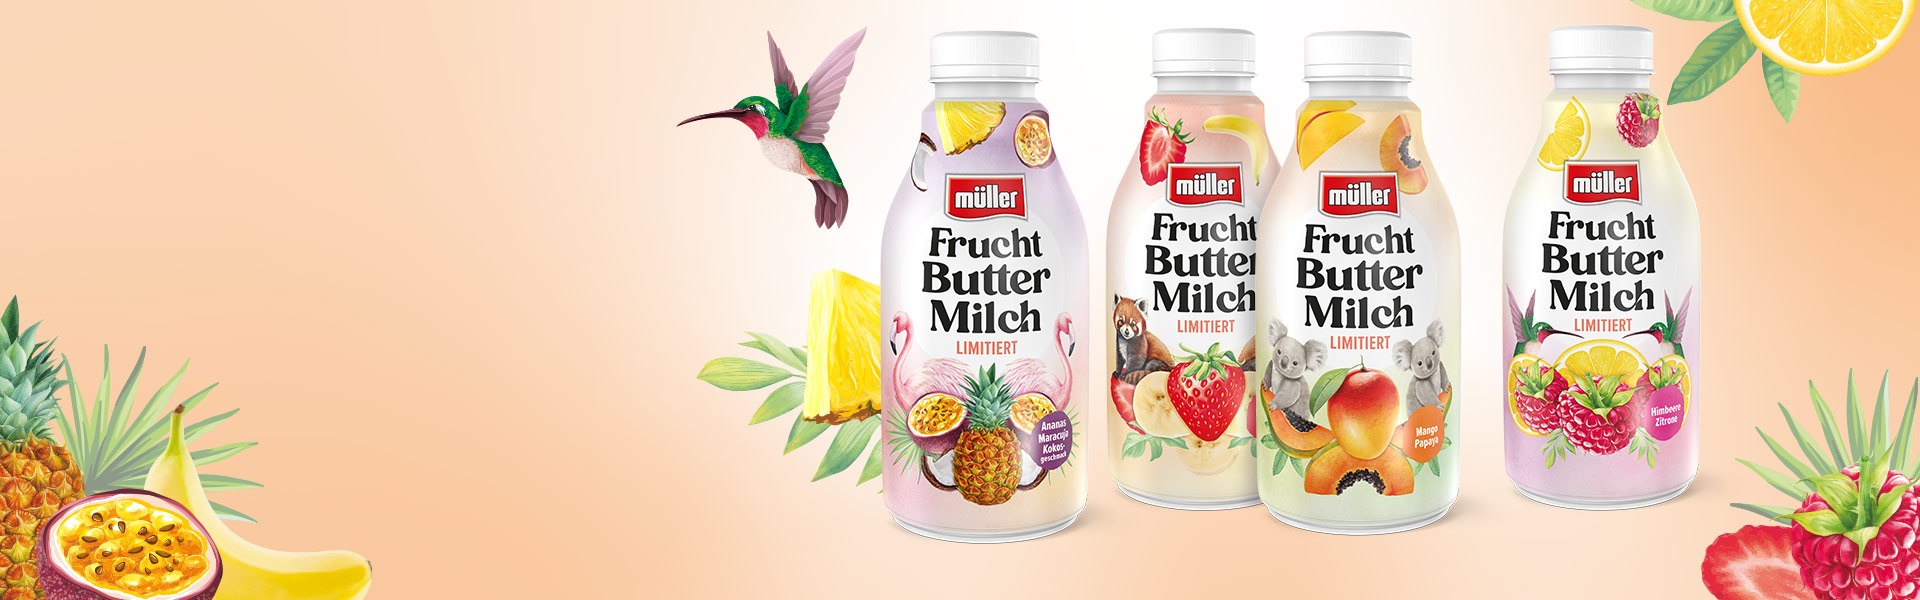 Unser "Sweet Summer" schmeckt lecker nach Müller Frucht Buttermilch Limitiert!